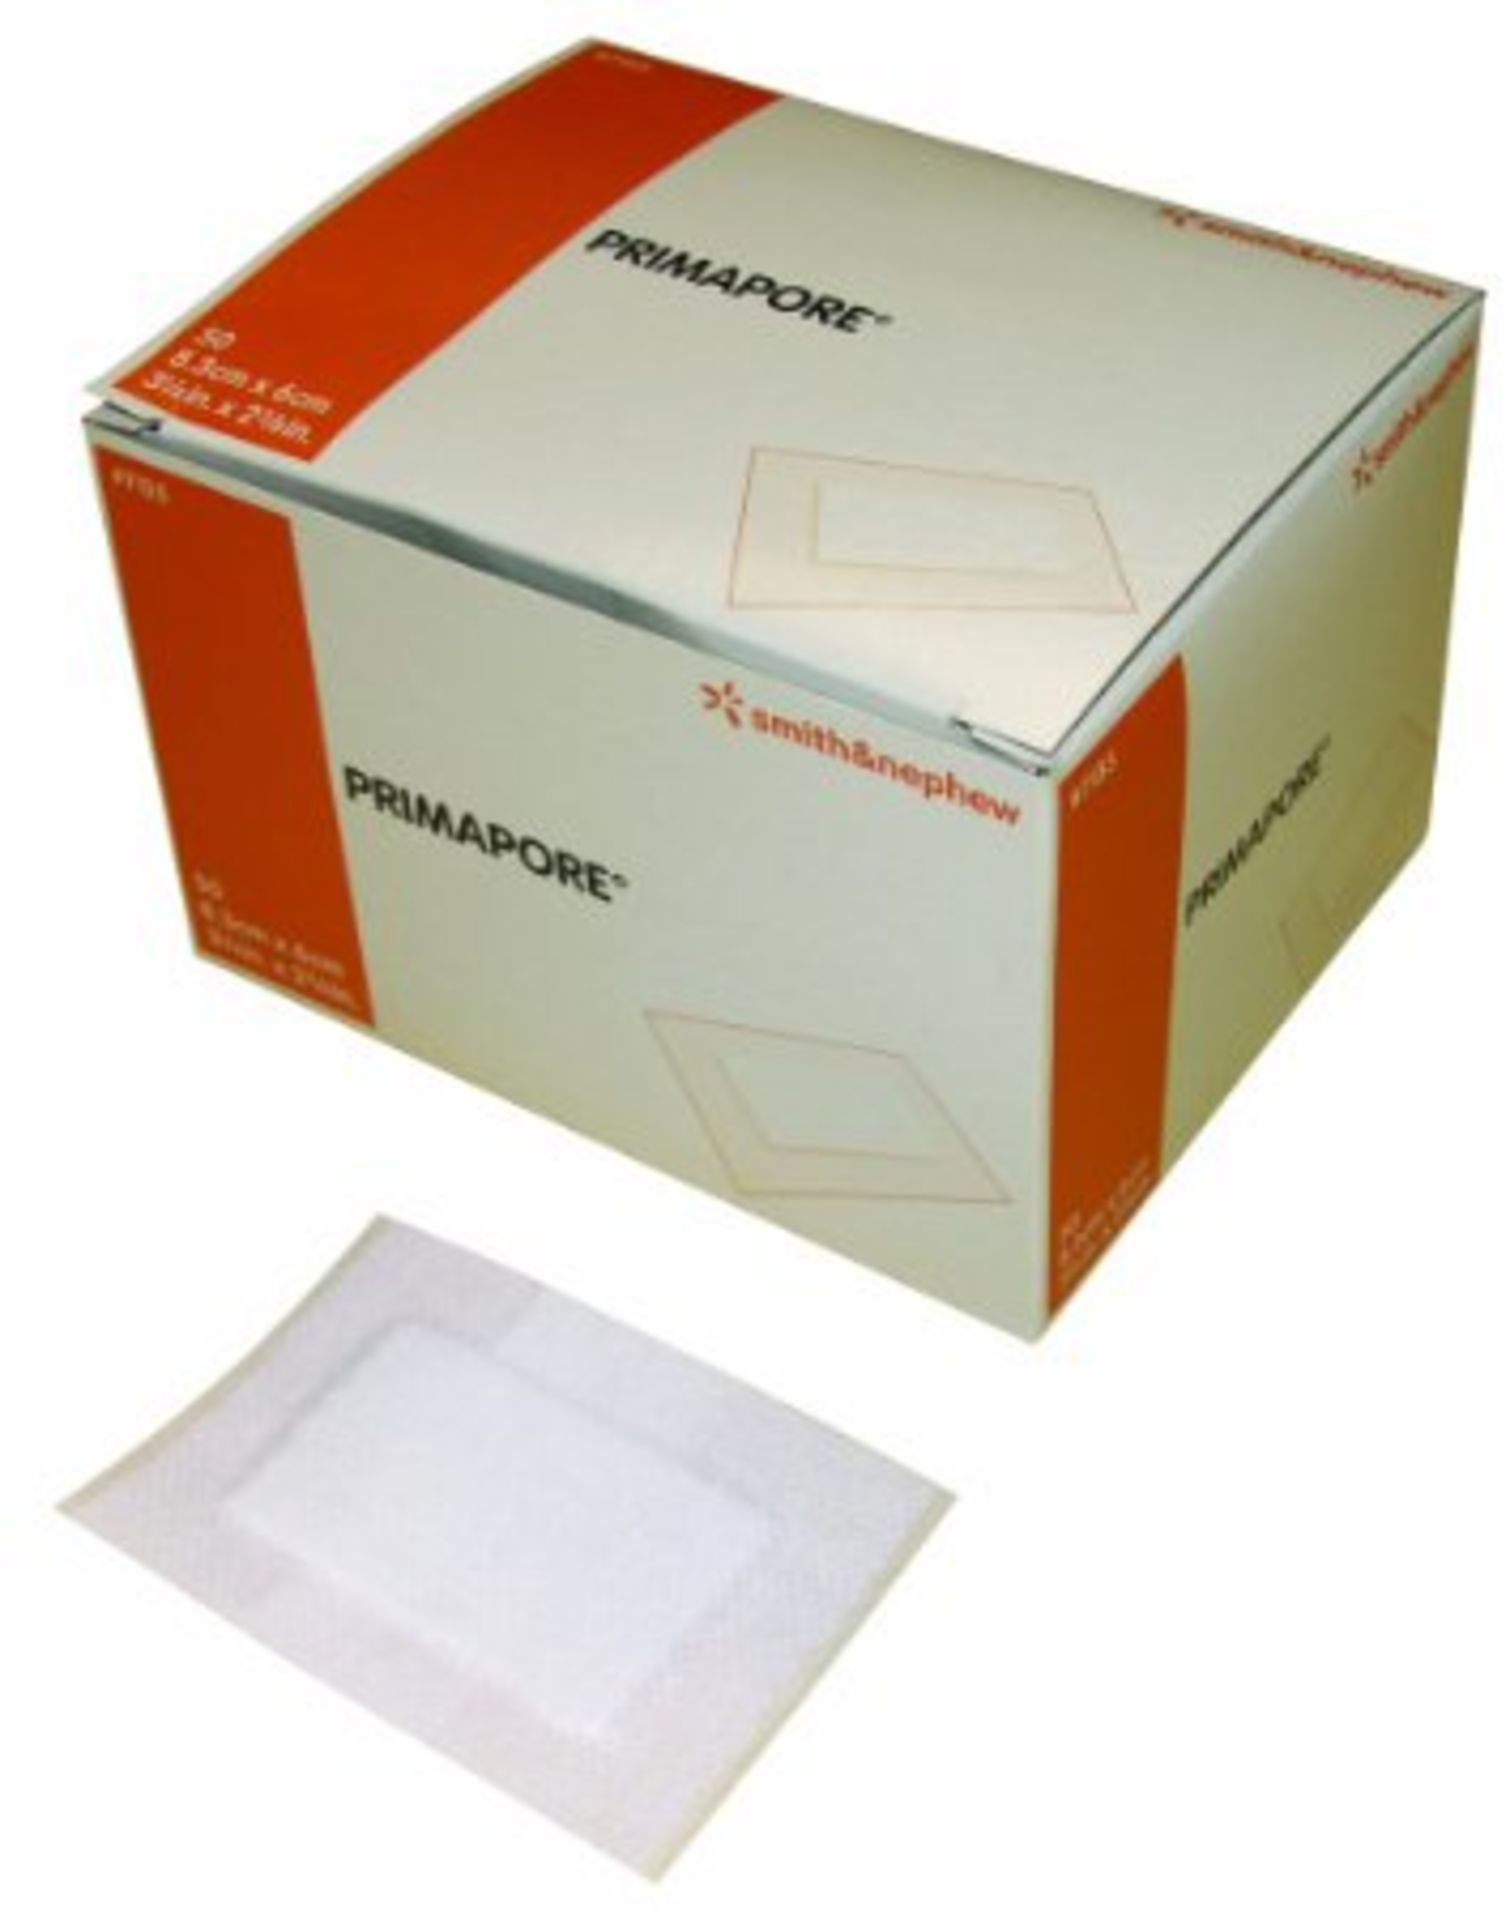 CONSUMABLE HYGENE PRODUCTS - 1 Box of 58 units - Latest AMZ price £770 - Image 3 of 10